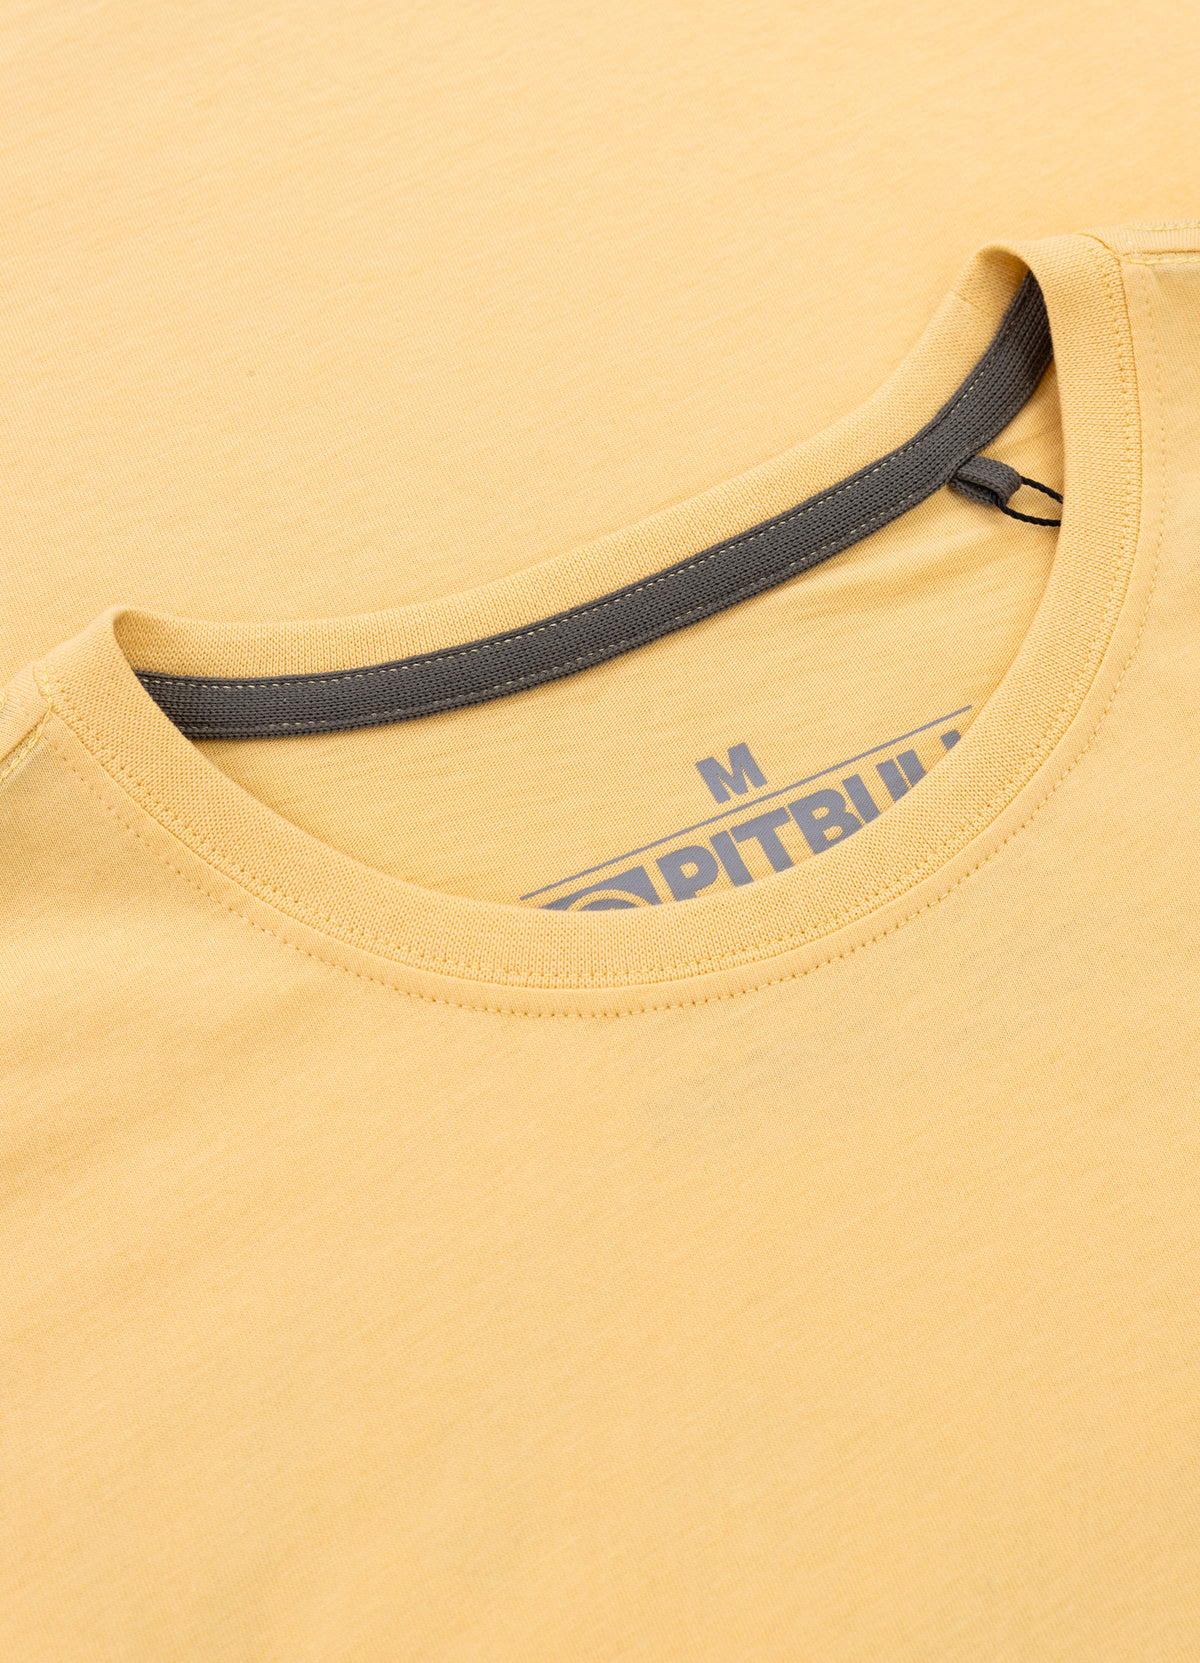 PITBULL SO CAL Yellow T-shirt